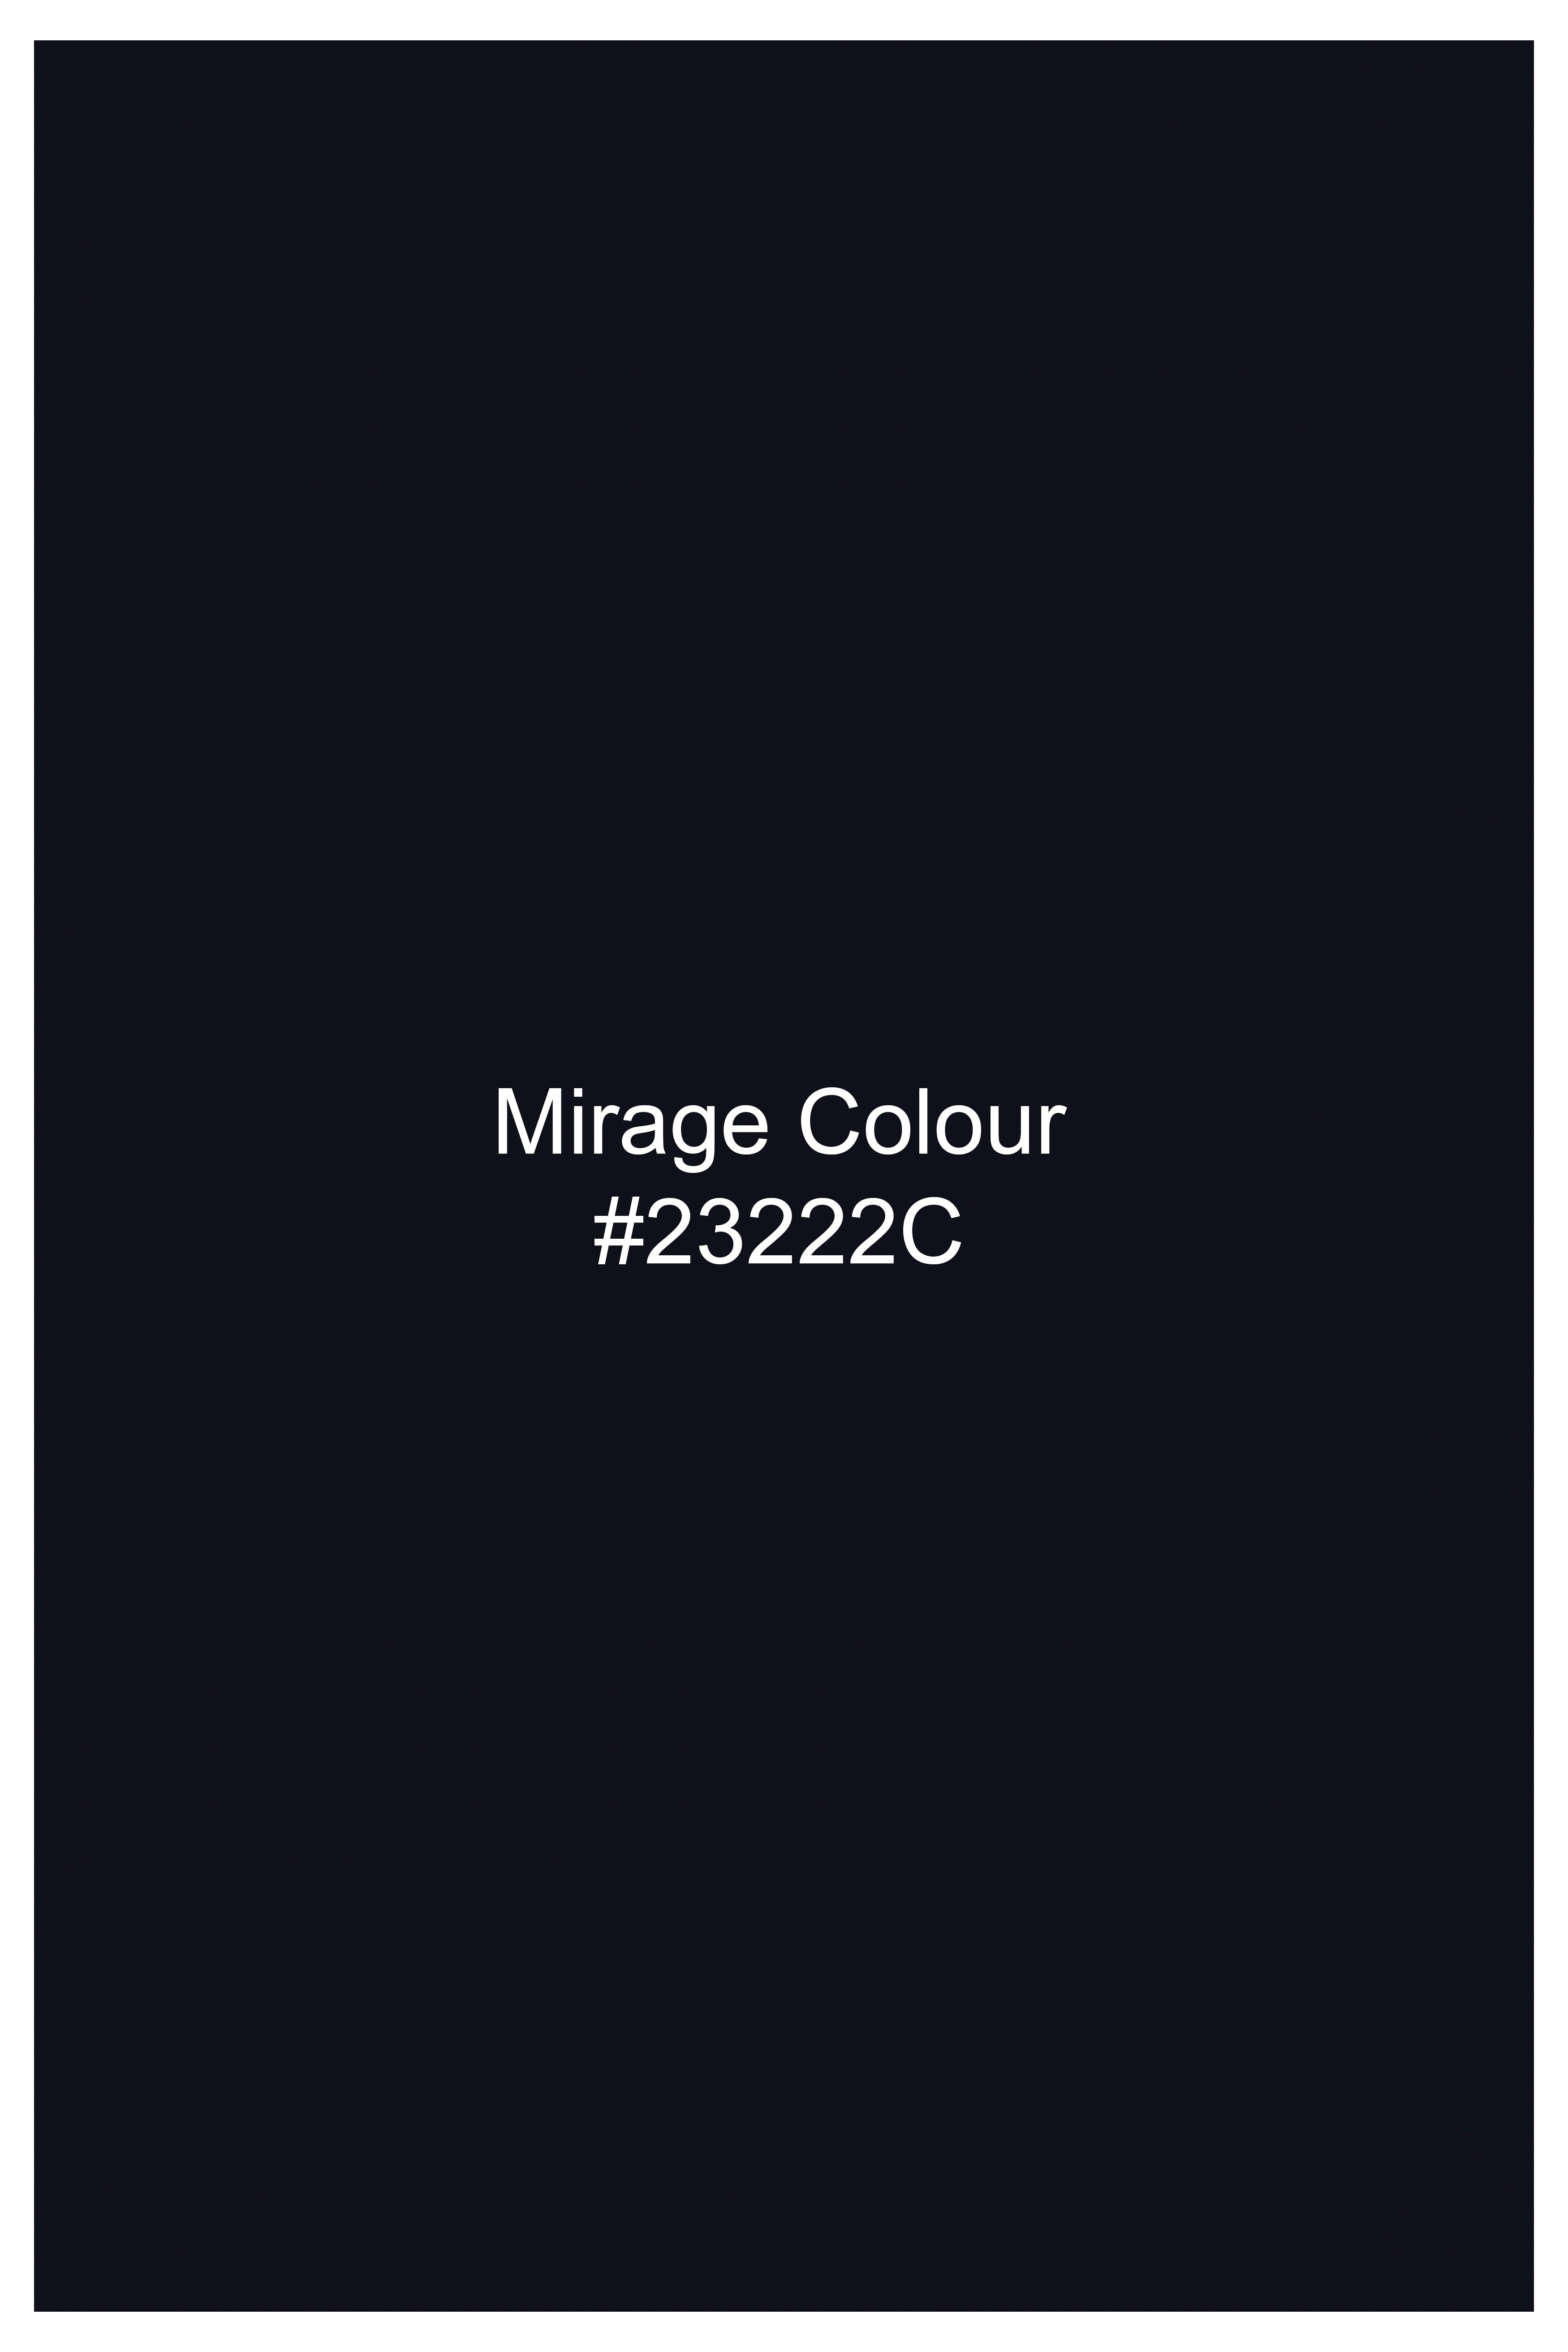 Mirage Blue Premium Cotton Pant T2759-28, T2759-30, T2759-32, T2759-34, T2759-36, T2759-38, T2759-40, T2759-42, T2759-44